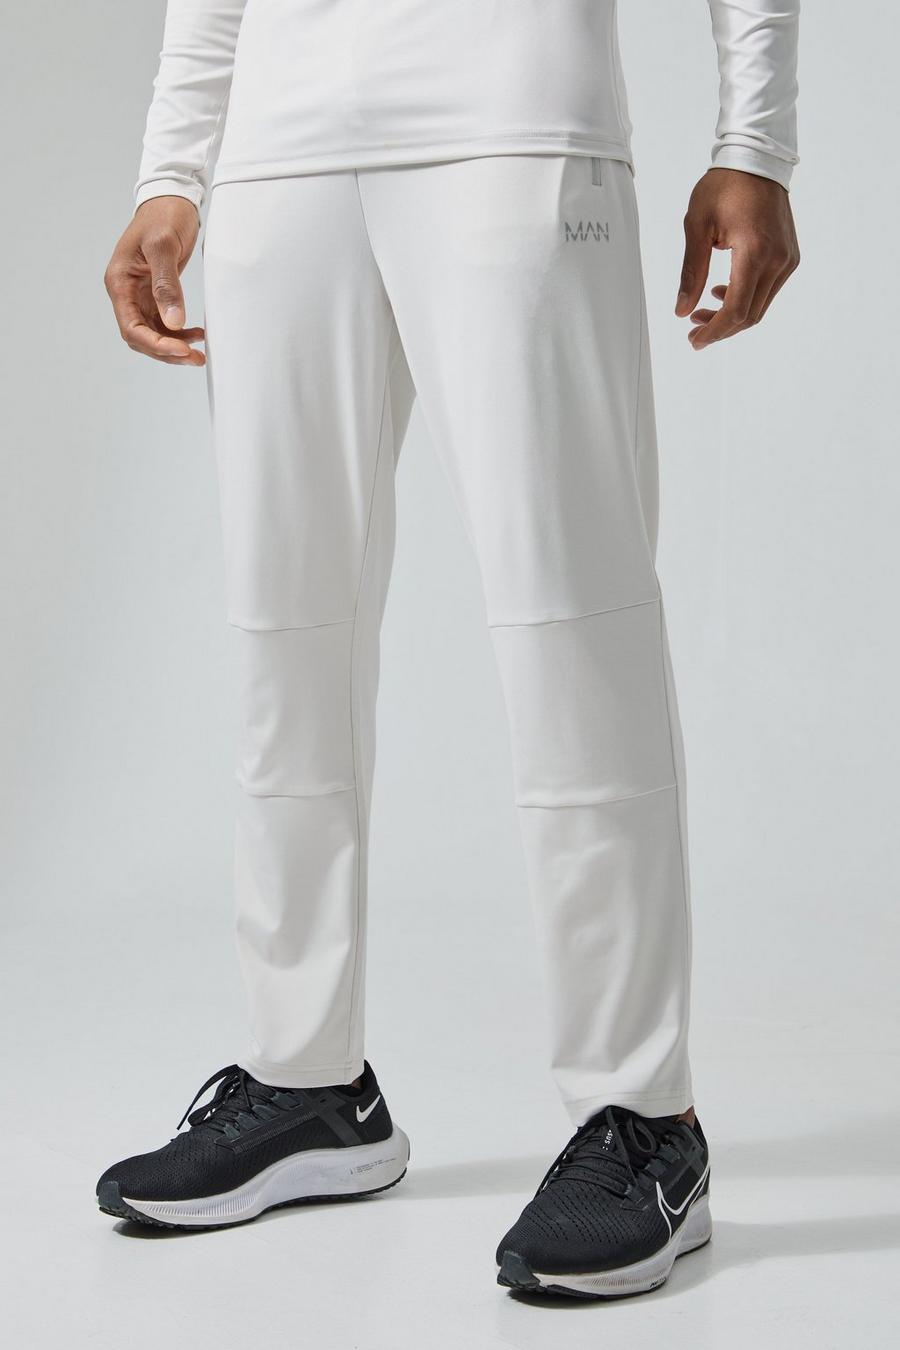 Pantalón deportivo MAN Active elástico, Light grey